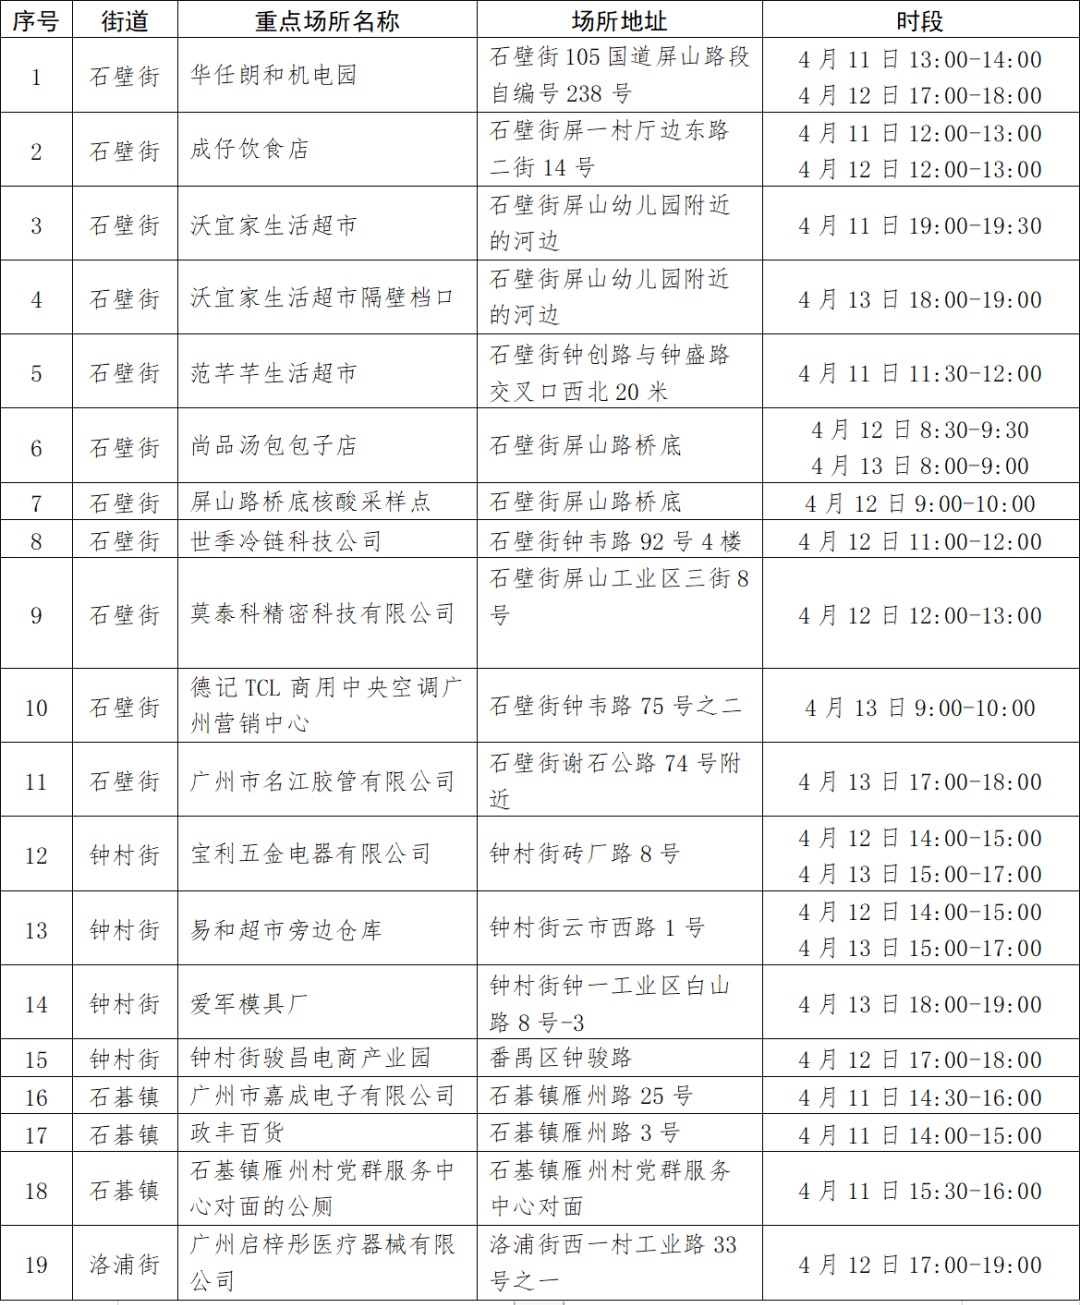 广州番禺疾控：到过这19个重点场所的人员请立即报备并核酸检测